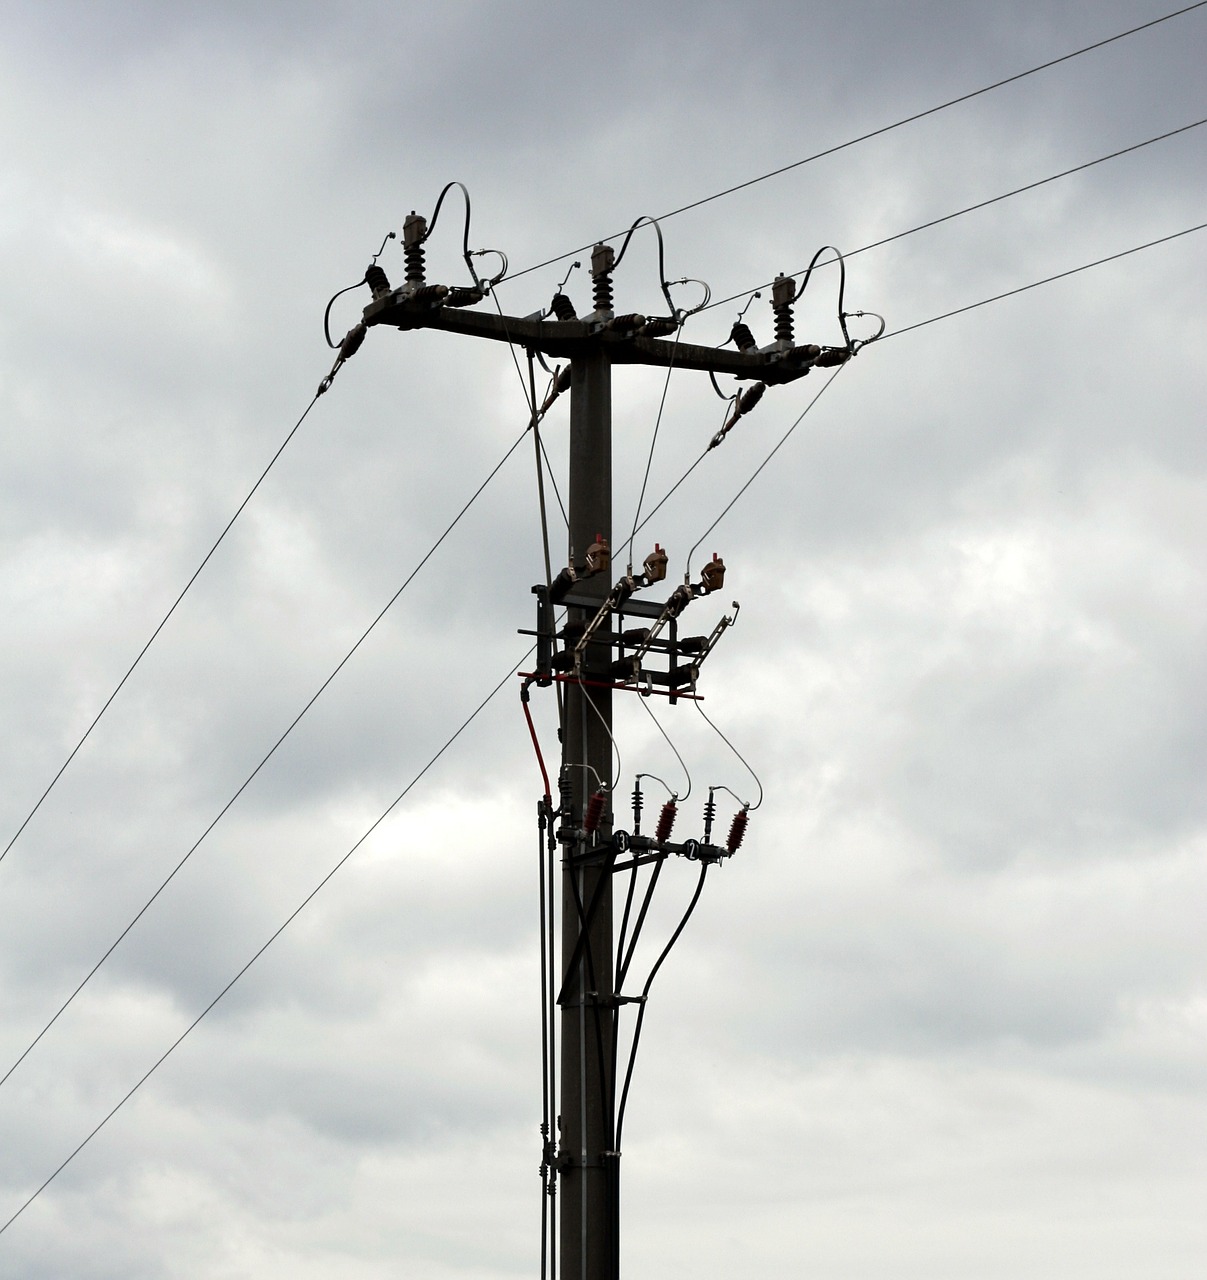 strommast energy power lines free photo